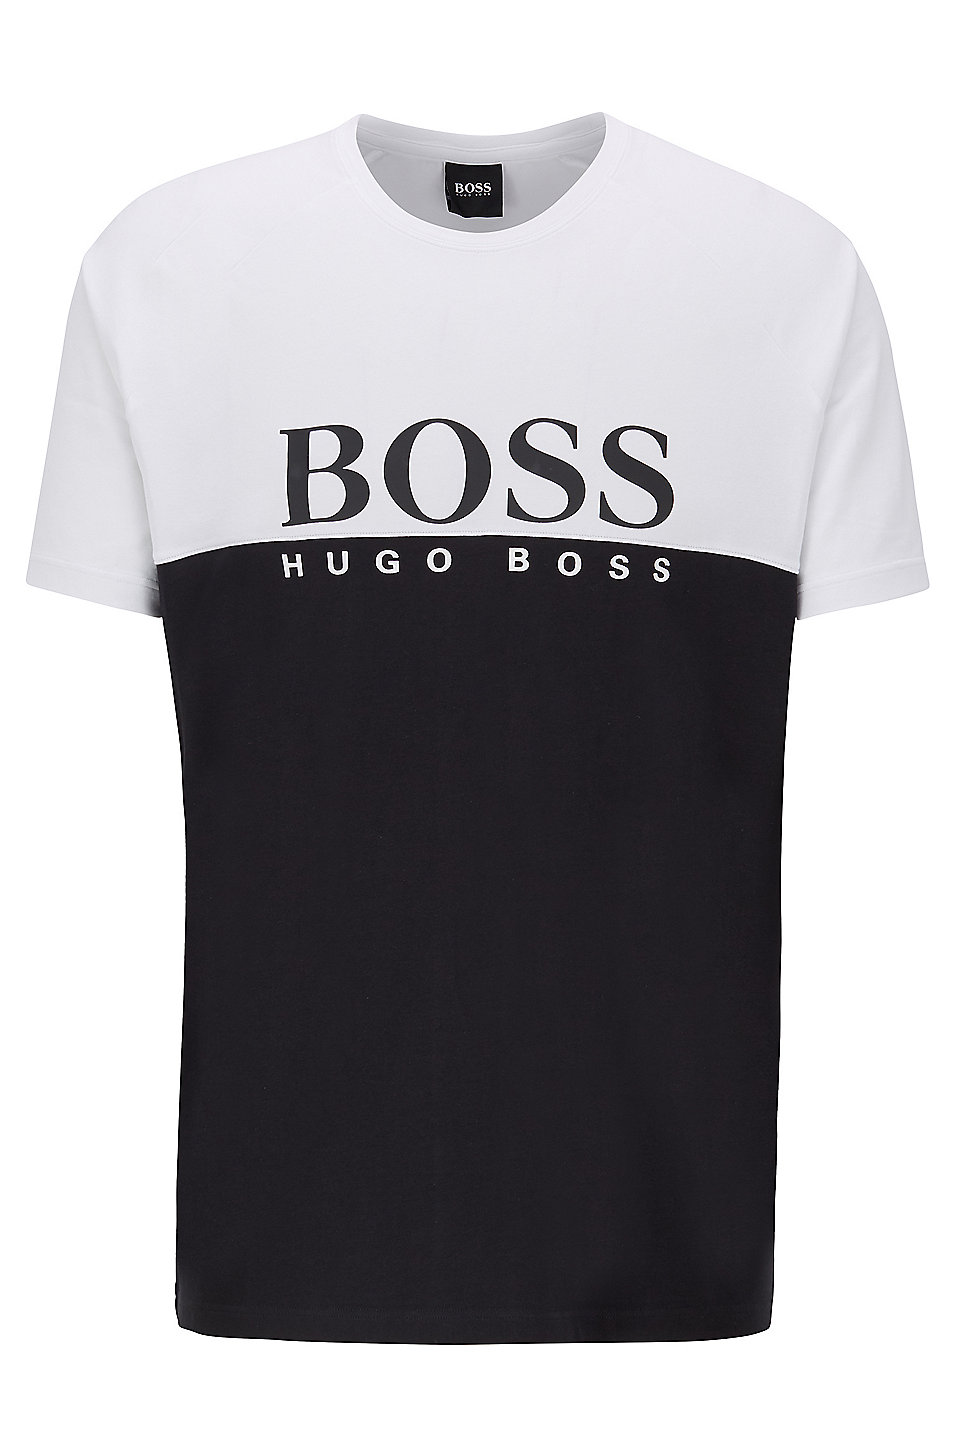 Футболки хуго босс. Белая футболка Хуго босс мужская. Футболка Хьюго Хьюго босс белая. Hugo Boss t-Shirt Black. Футболка Хуго босс 2009-.